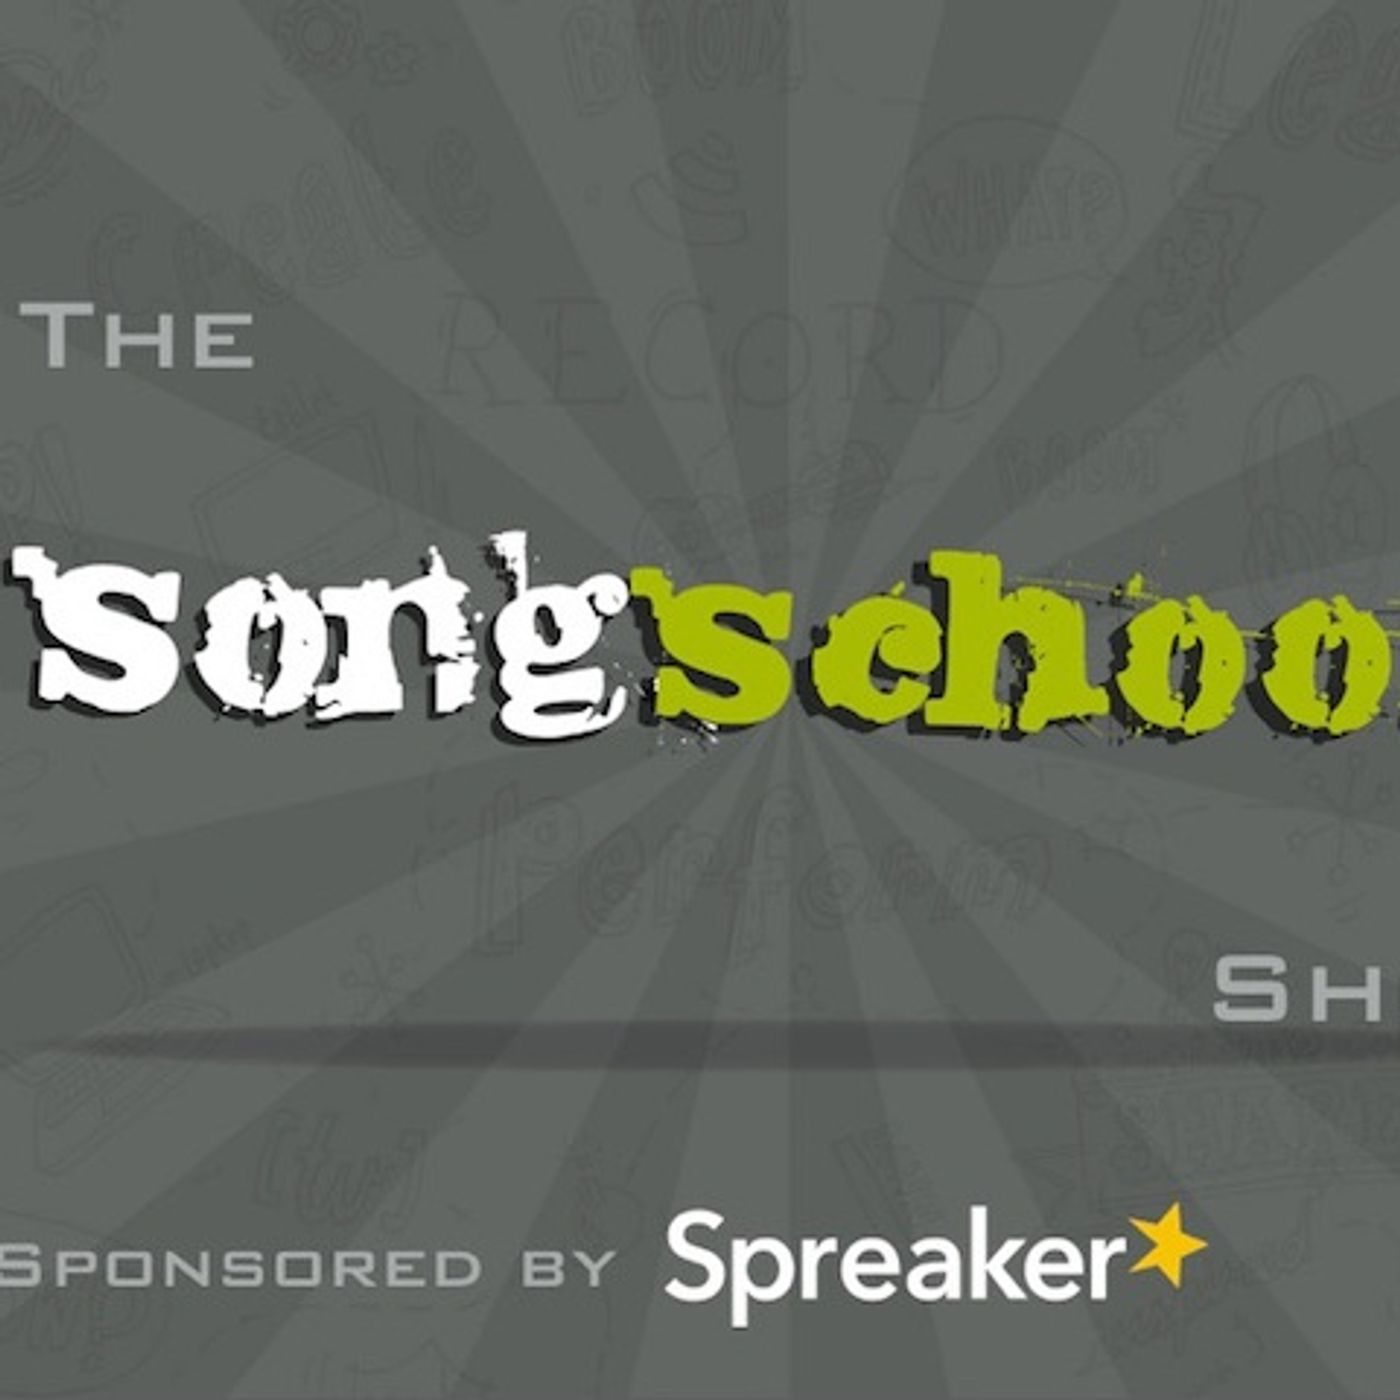 The Songschool Show @ Coláiste Íosagáin 2